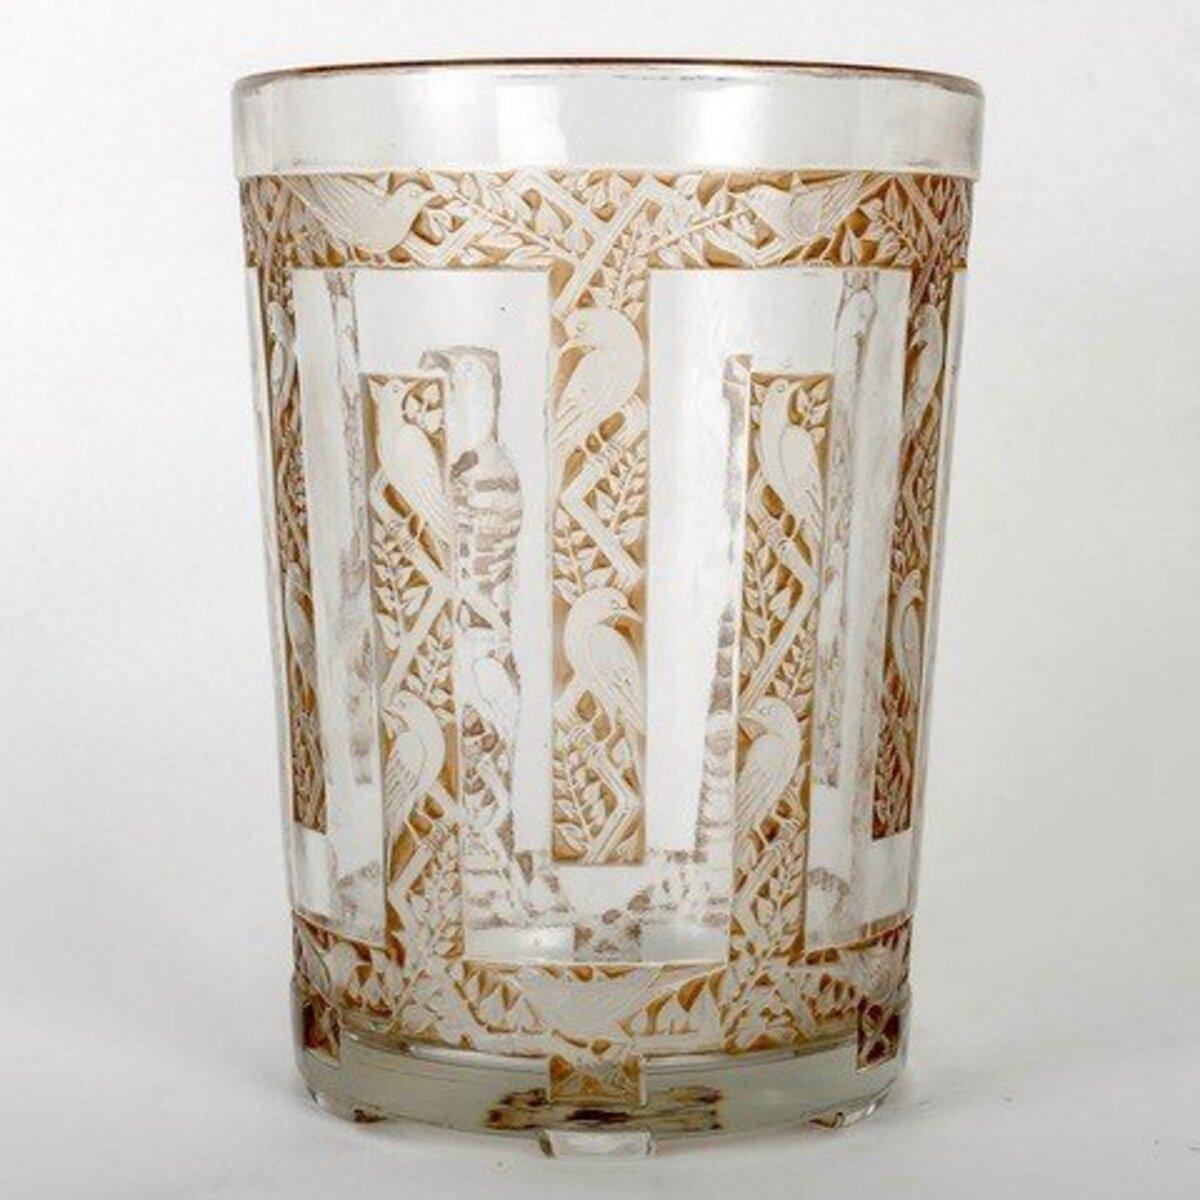 Glass Rene Lalique, Vase Grimpereaux - 1926